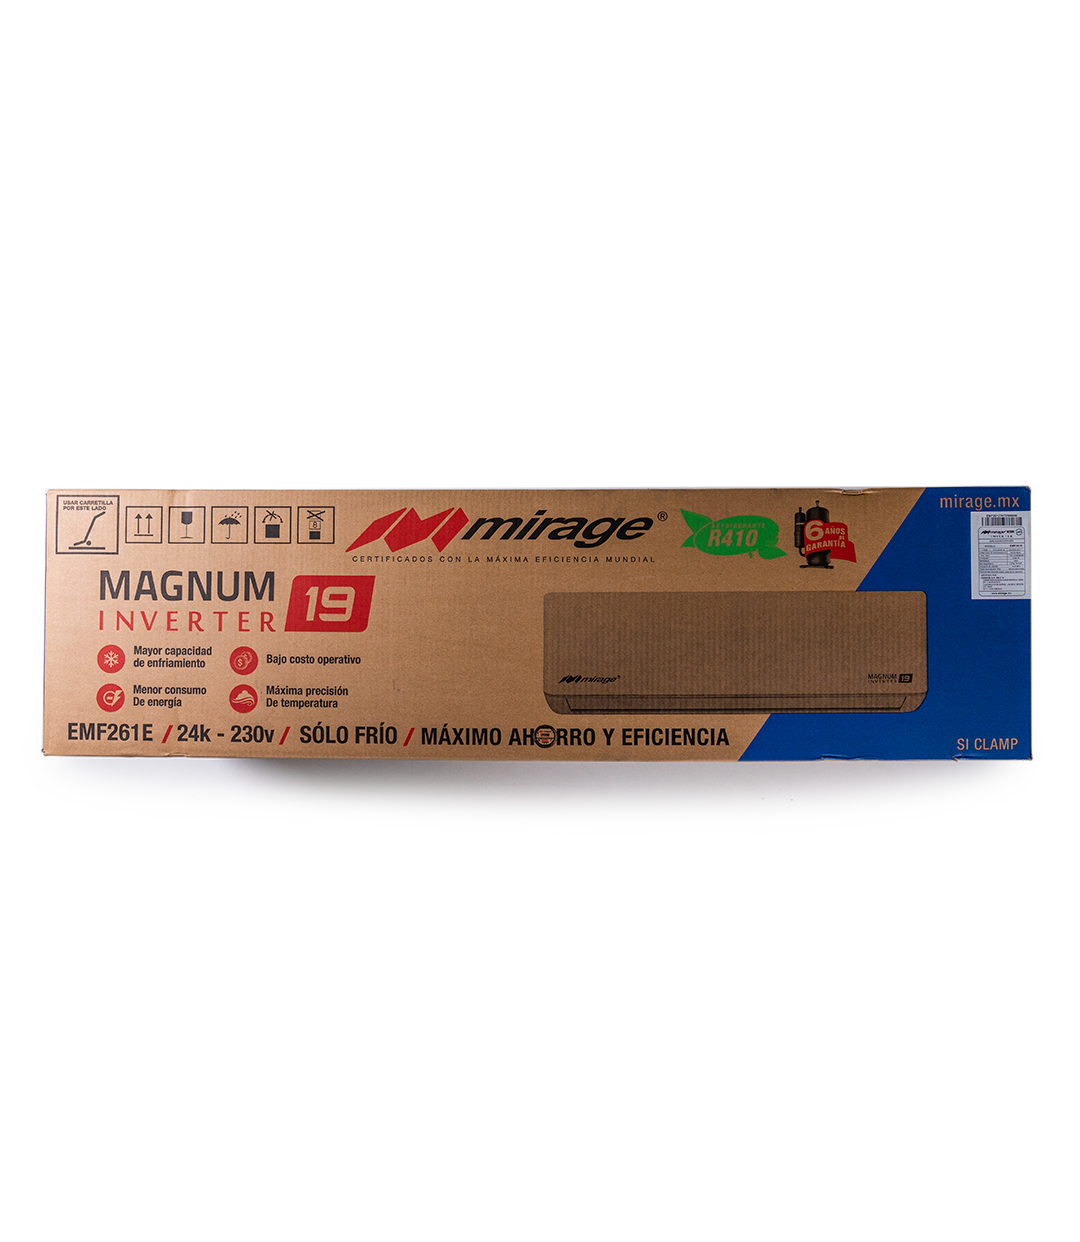 Magnum 19 Inverter CMF261E 2 Toneladas